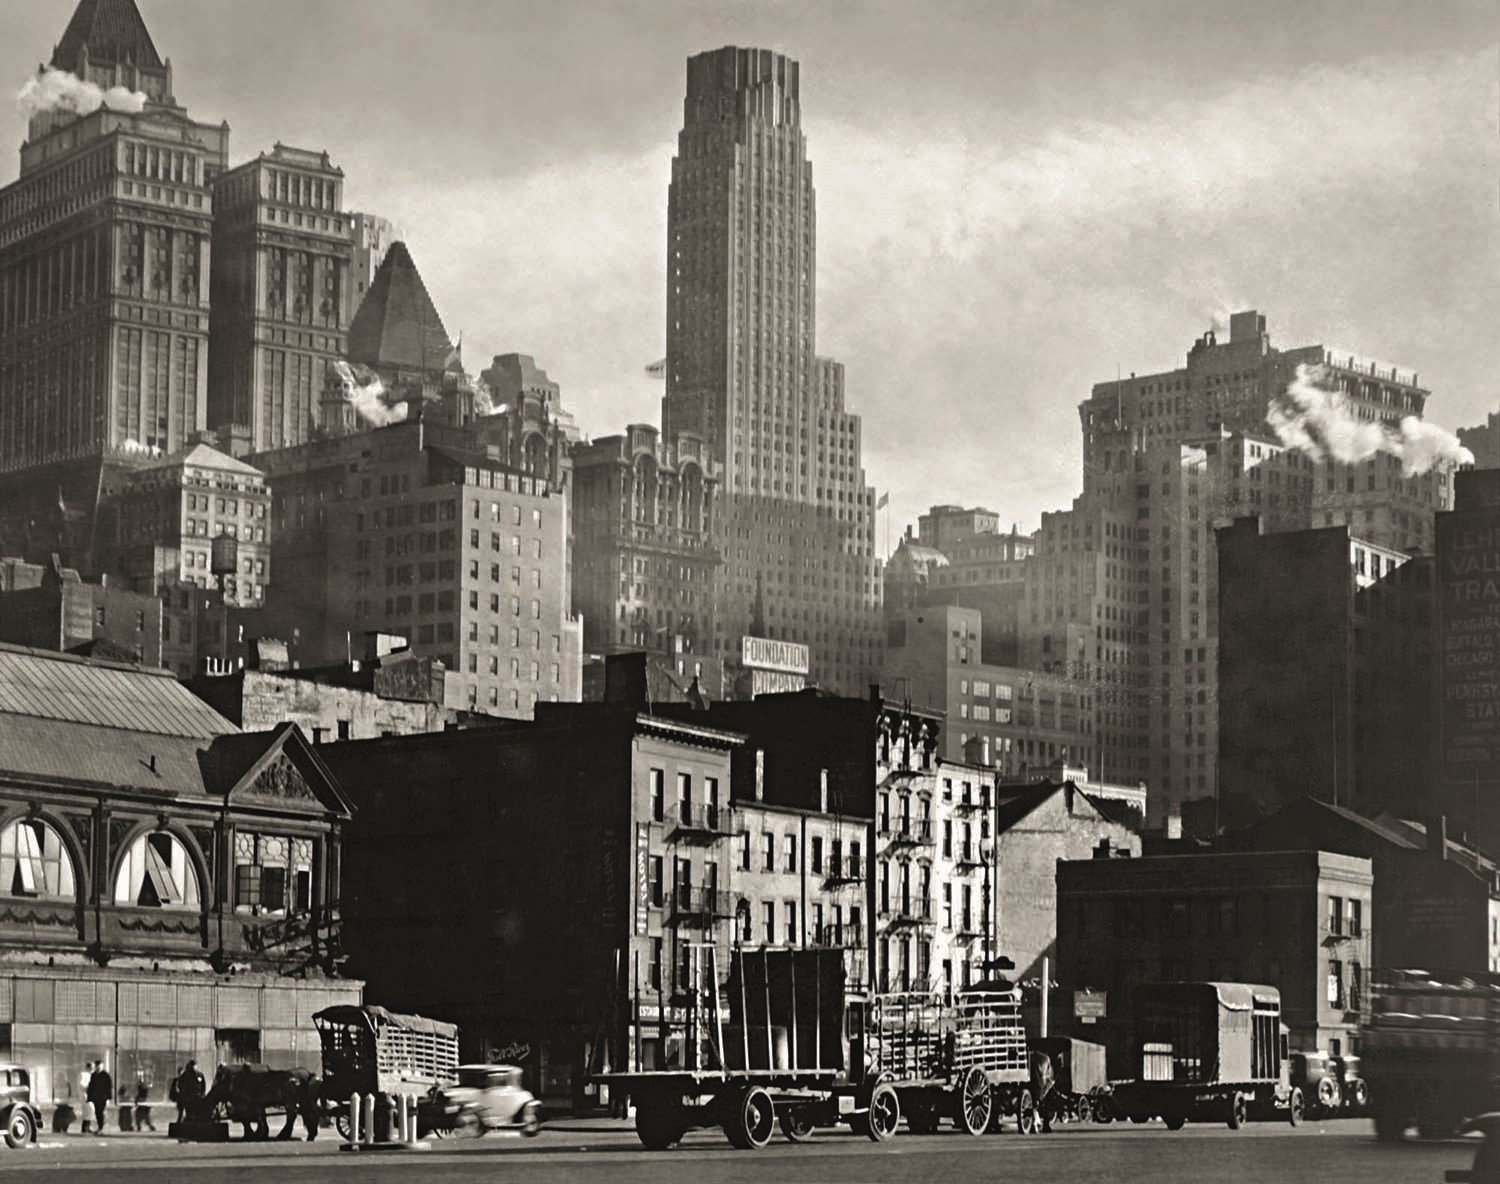  West Street, 1932, de Berenice Abbott.